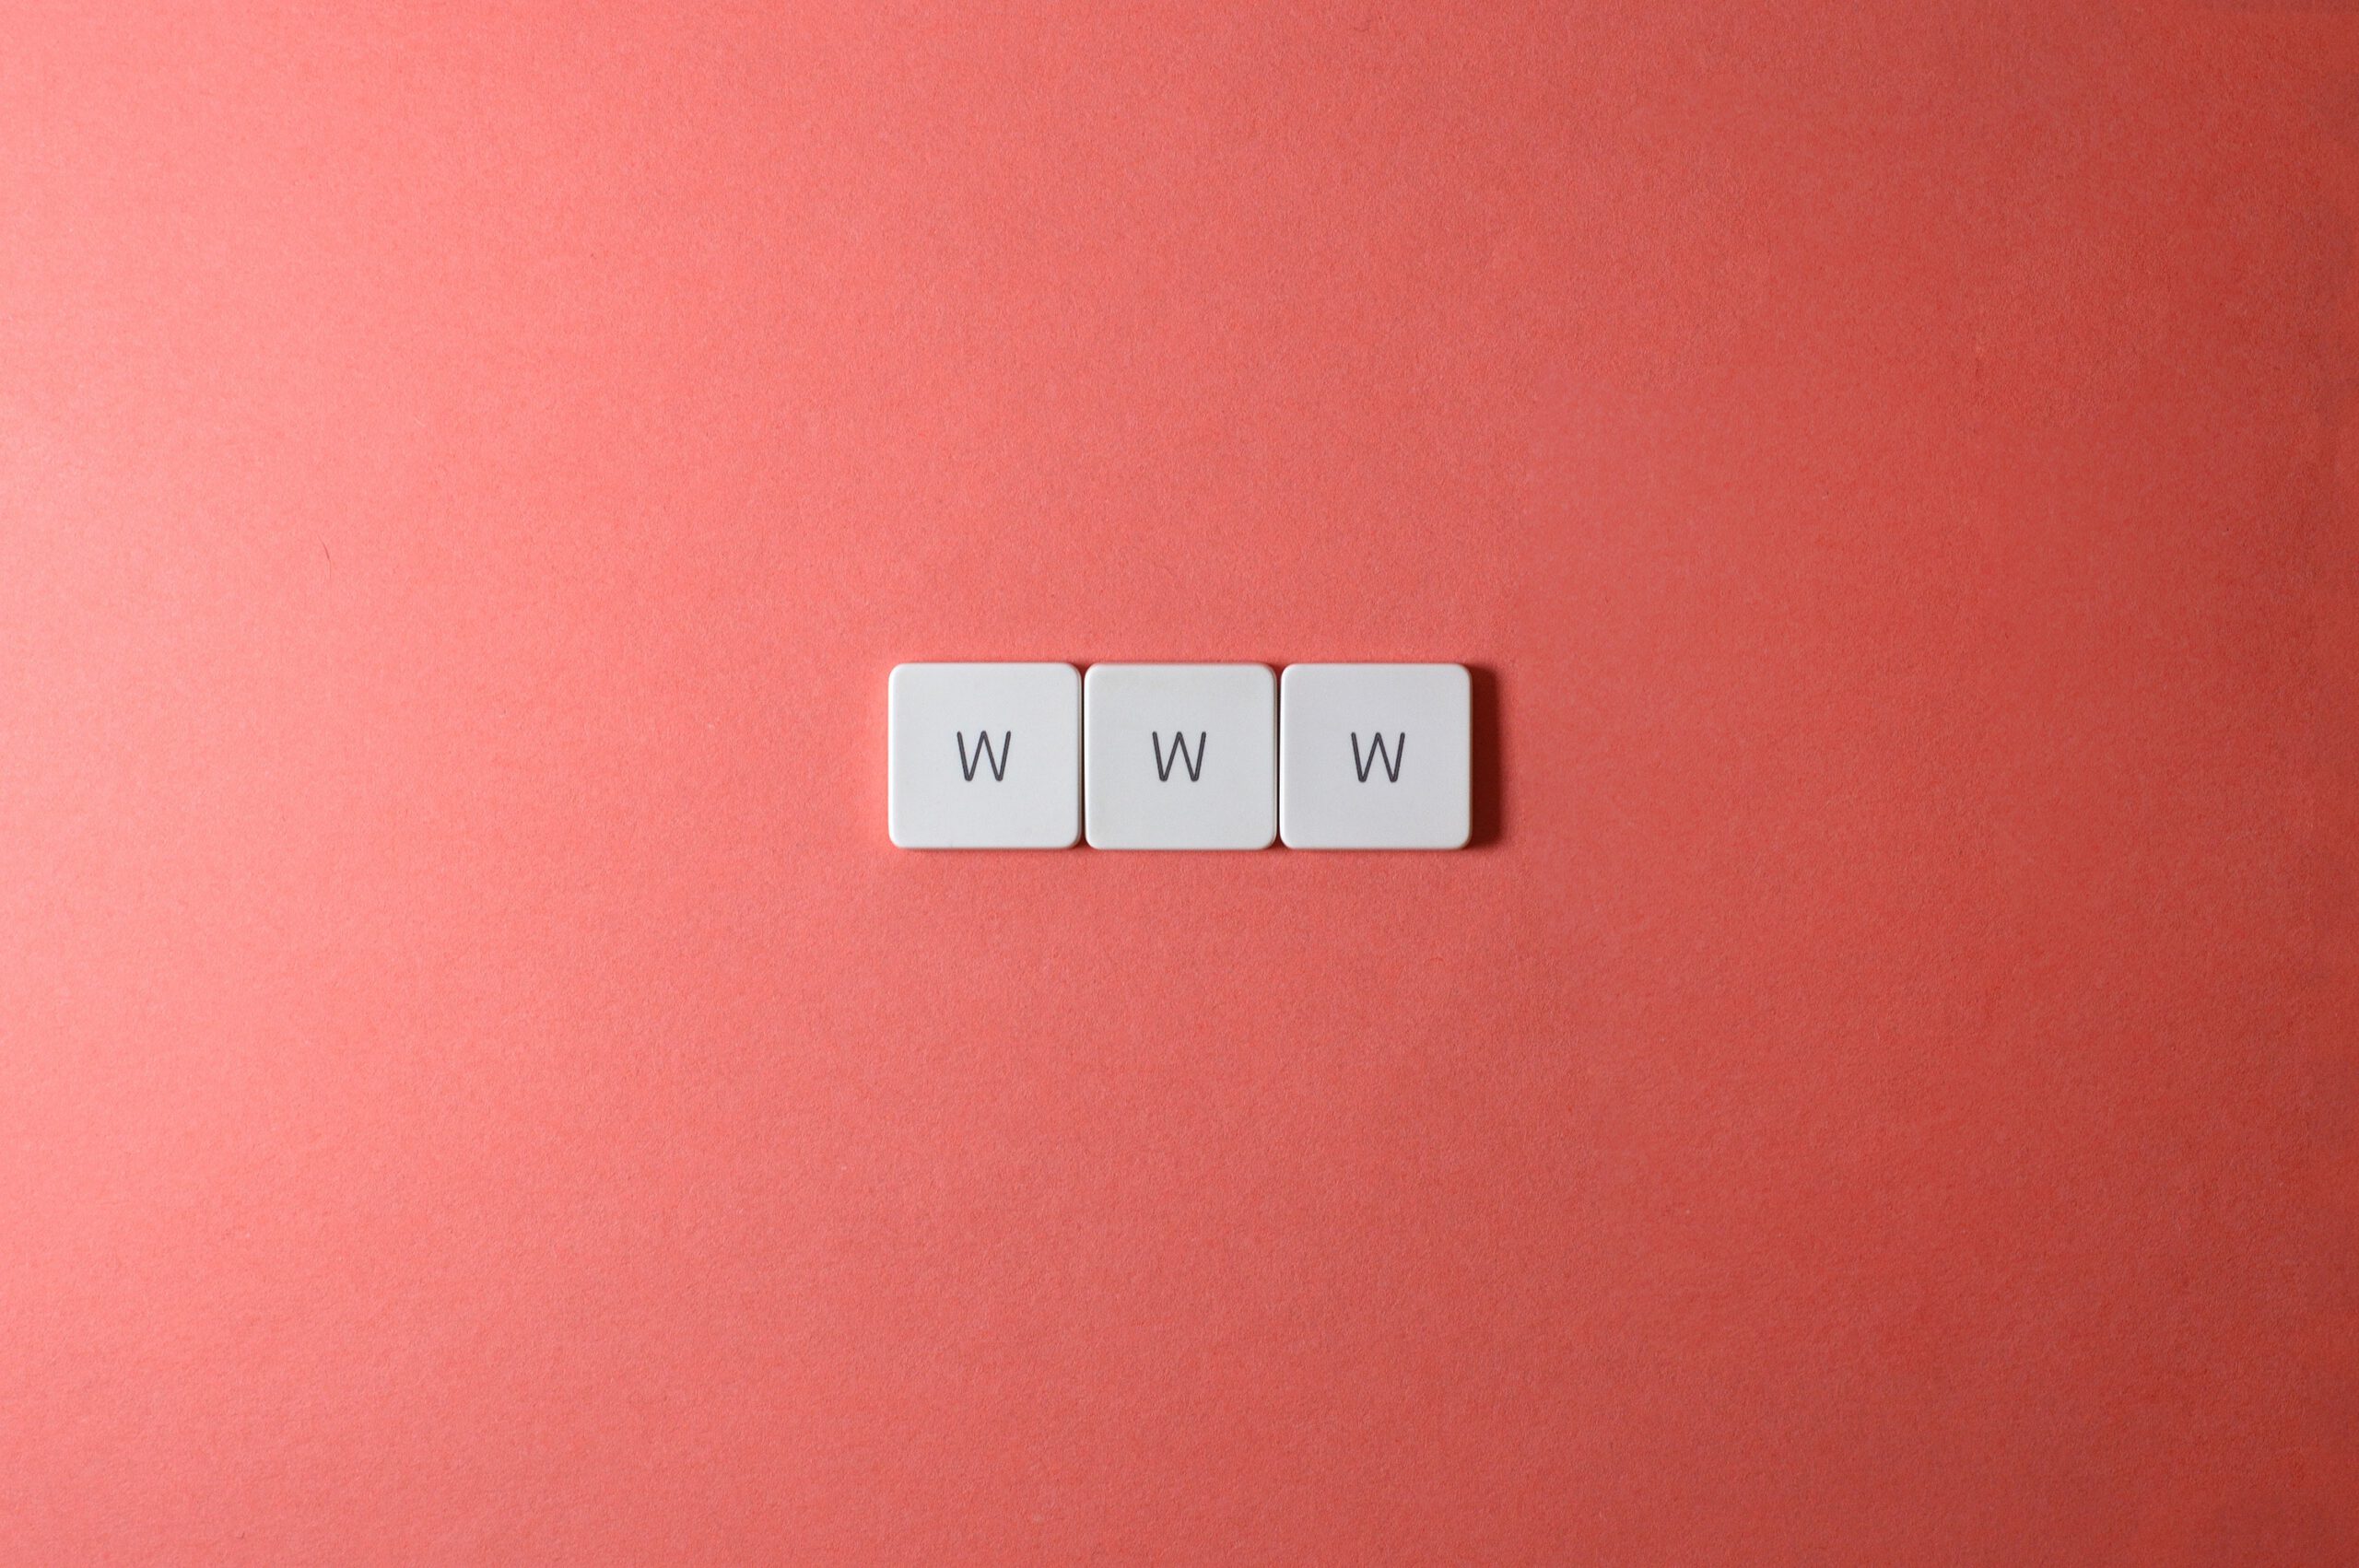 Trzy literki "w" na drewnianych kostkach, tworząe słowo "www" na czerwonym tle